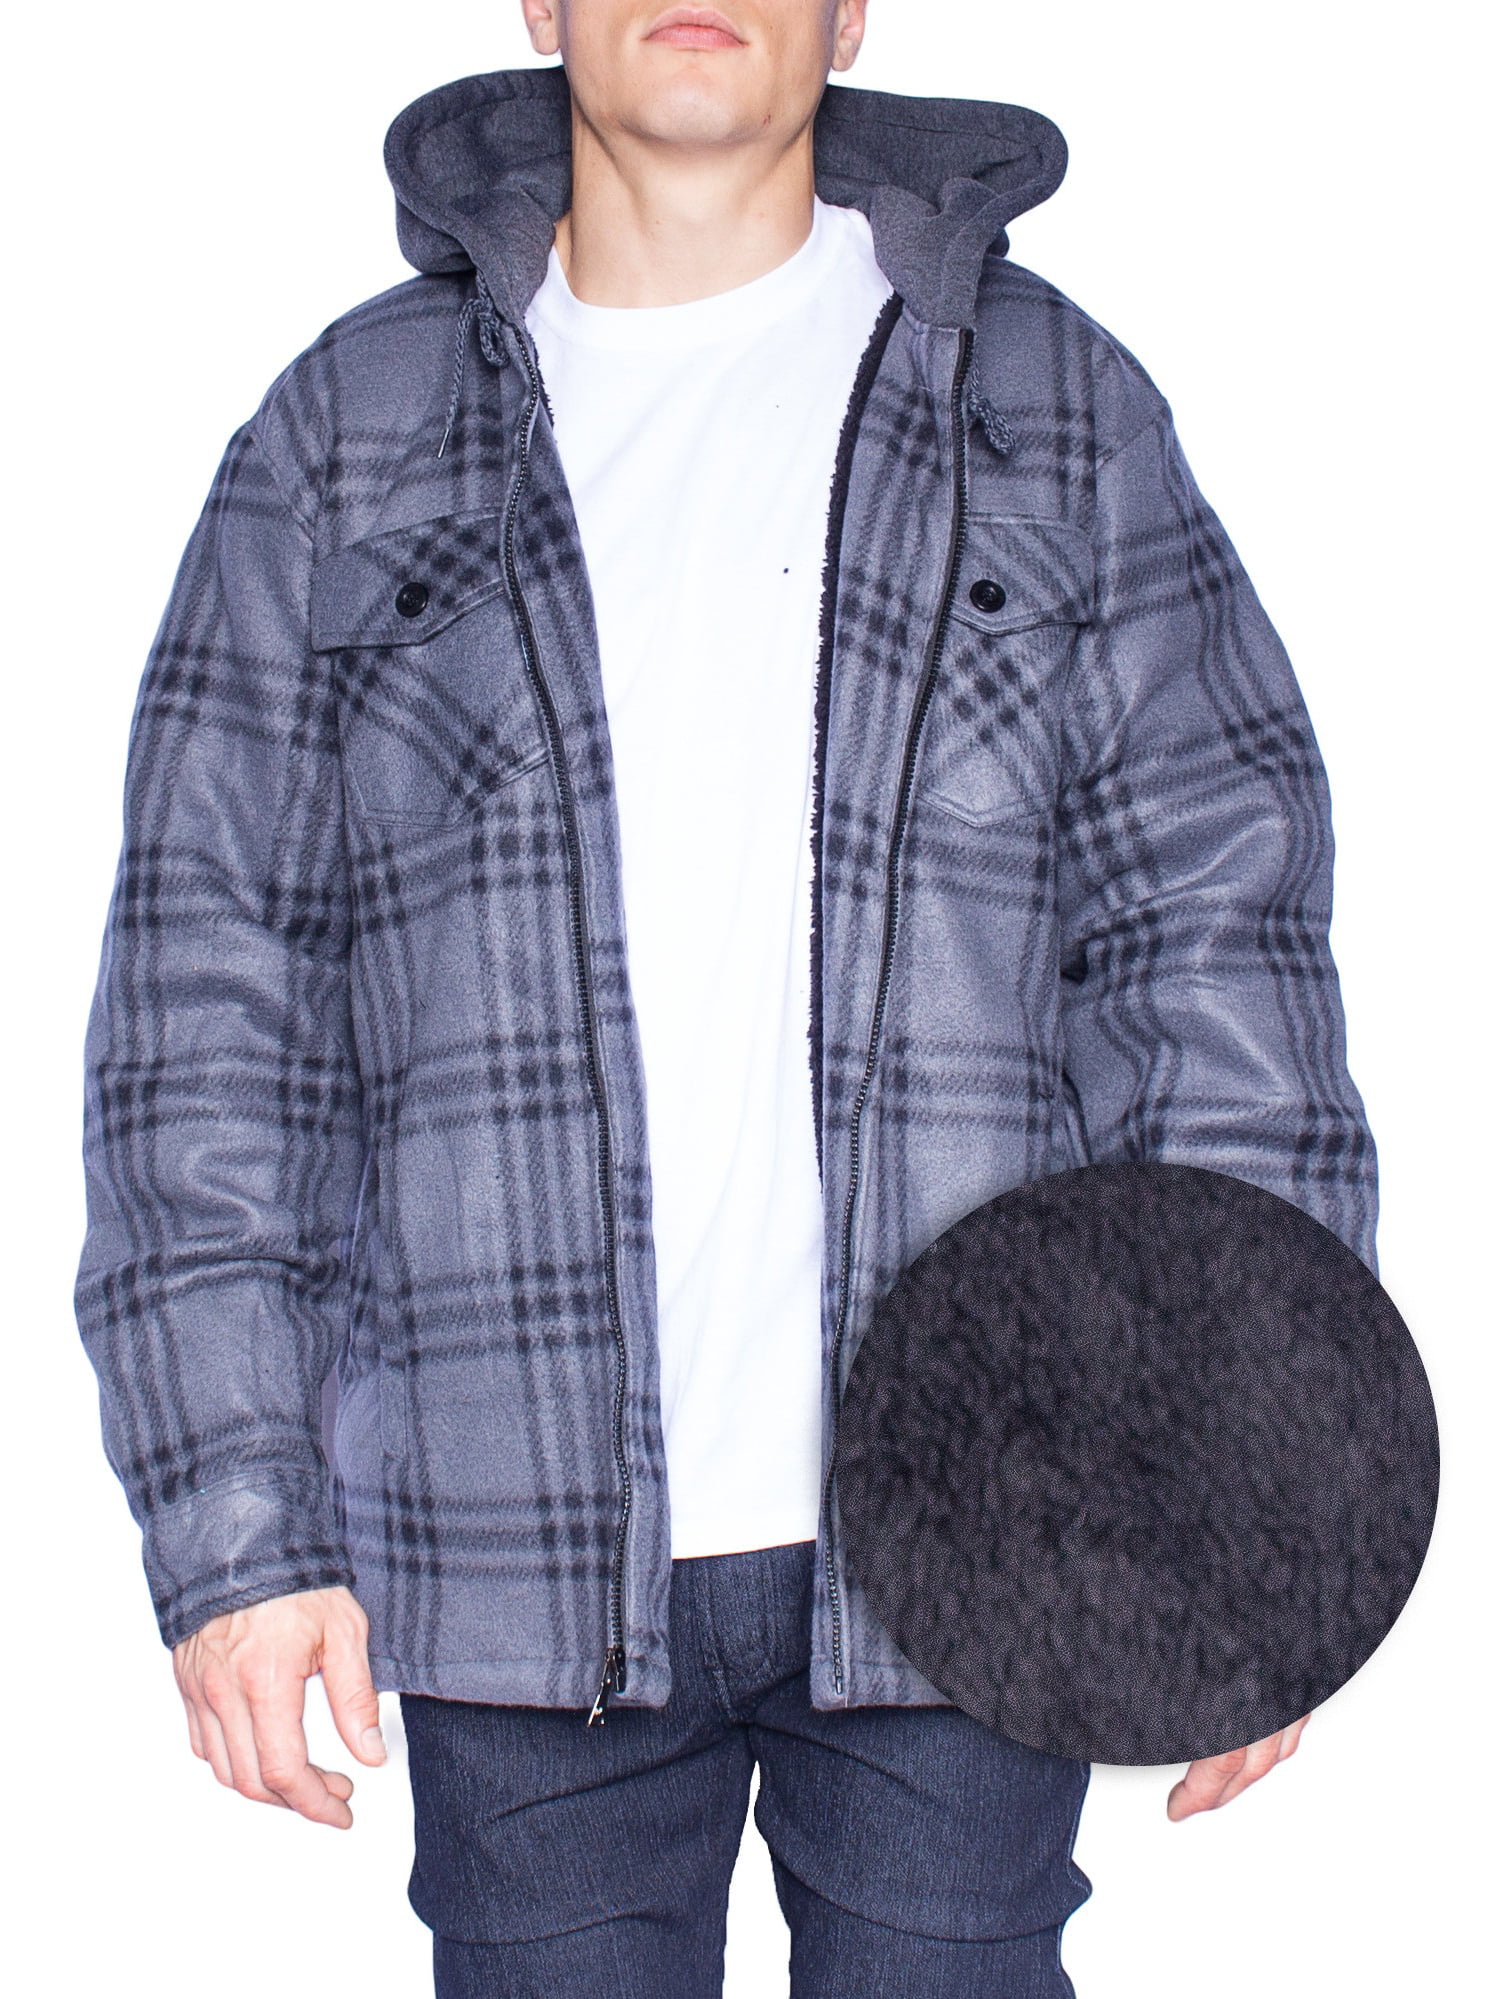 Walnut Creek Outdoors - Hoodie Flannel Fleece Jacket For Men Zip Up Big ...